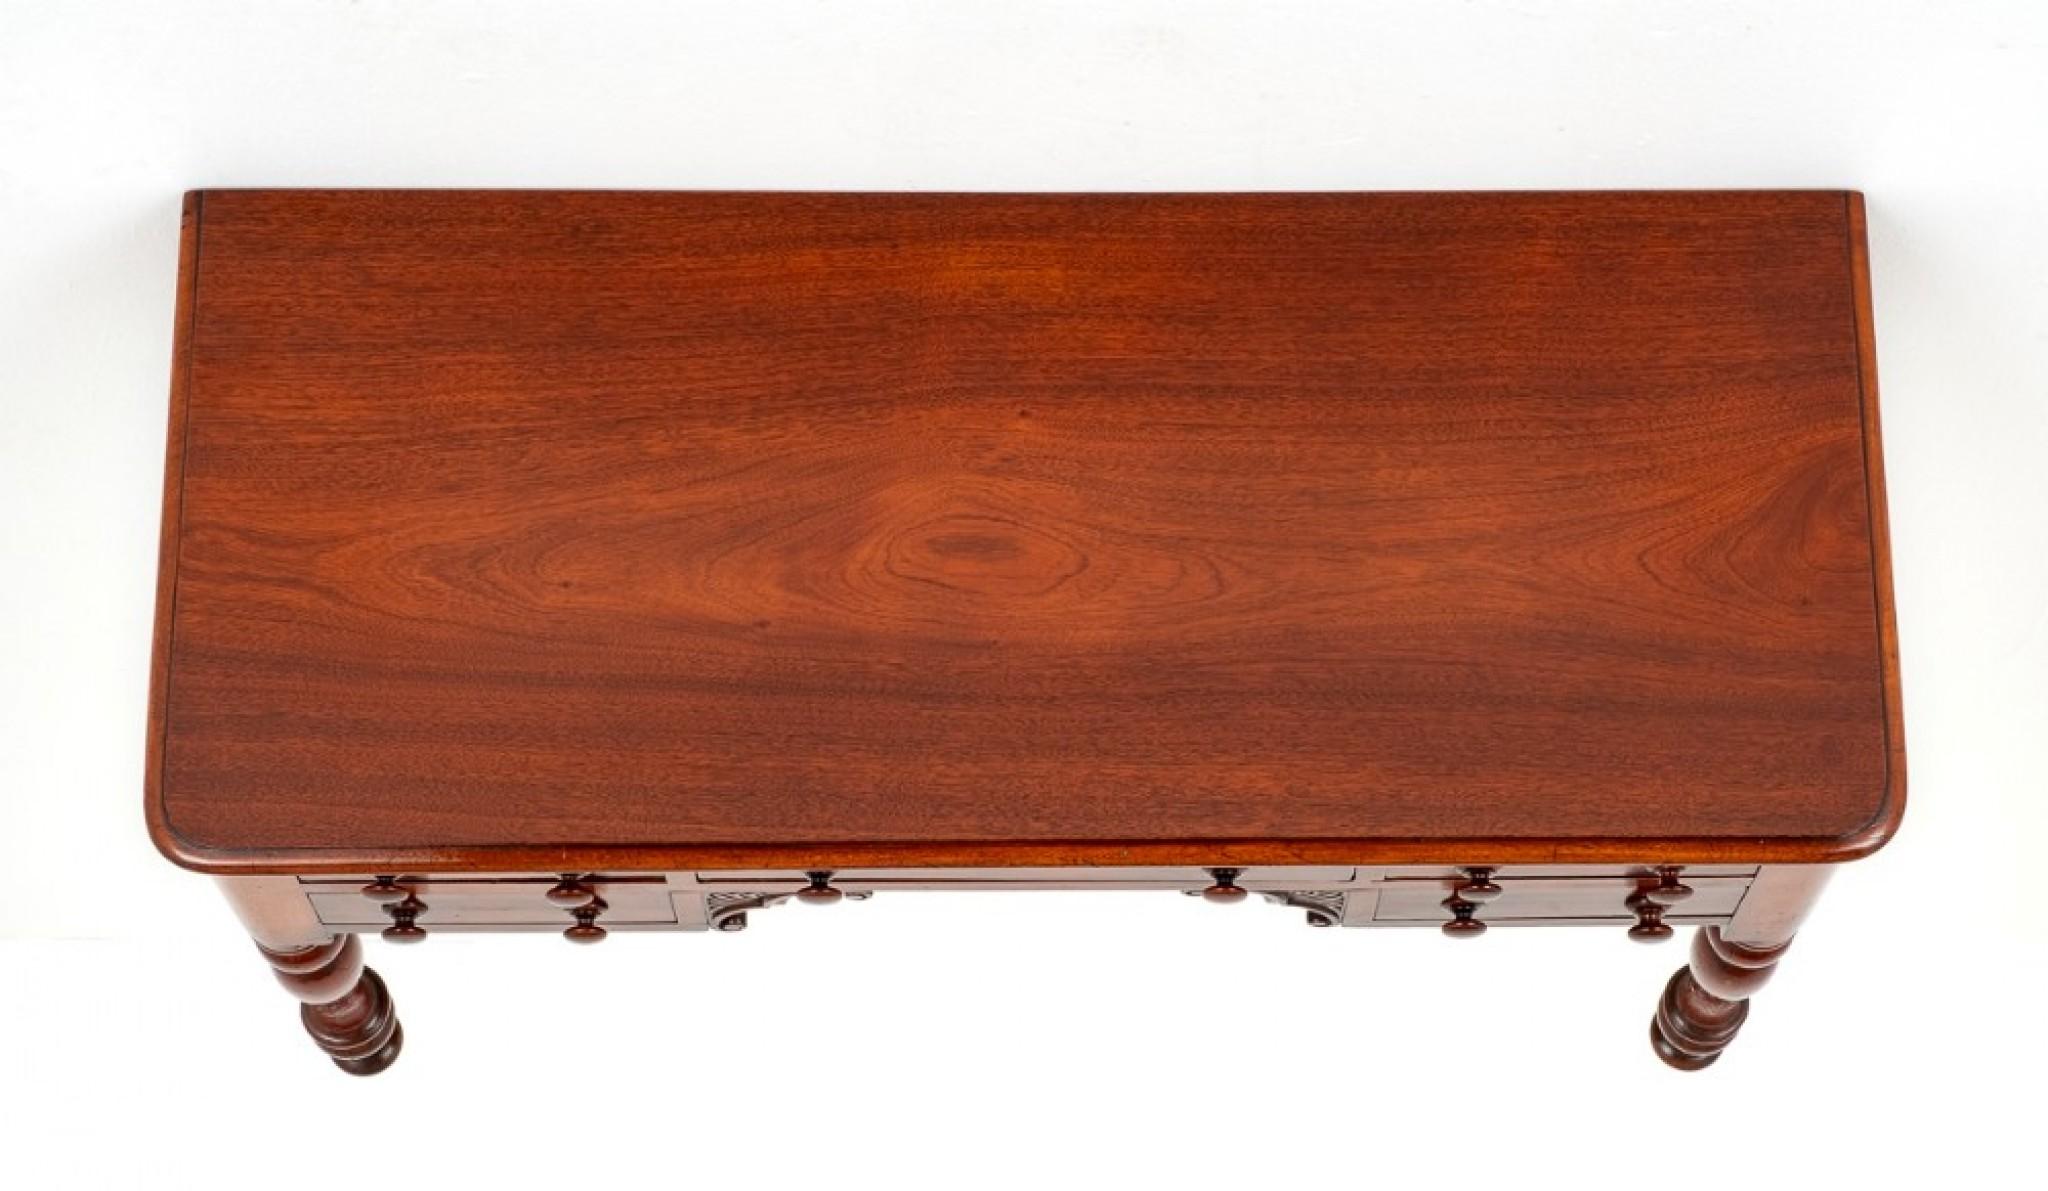 Viktorianischer Mahagoni-Schreibtisch.
CIRCA 1870
Dieser Schreibtisch hat eine Anordnung von 5 Schubladen aus Eichenholz, die die originalen gedrechselten Knäufe beibehalten. Der Schreibtisch steht auf gedrechselten Beinen mit originalen Messing-